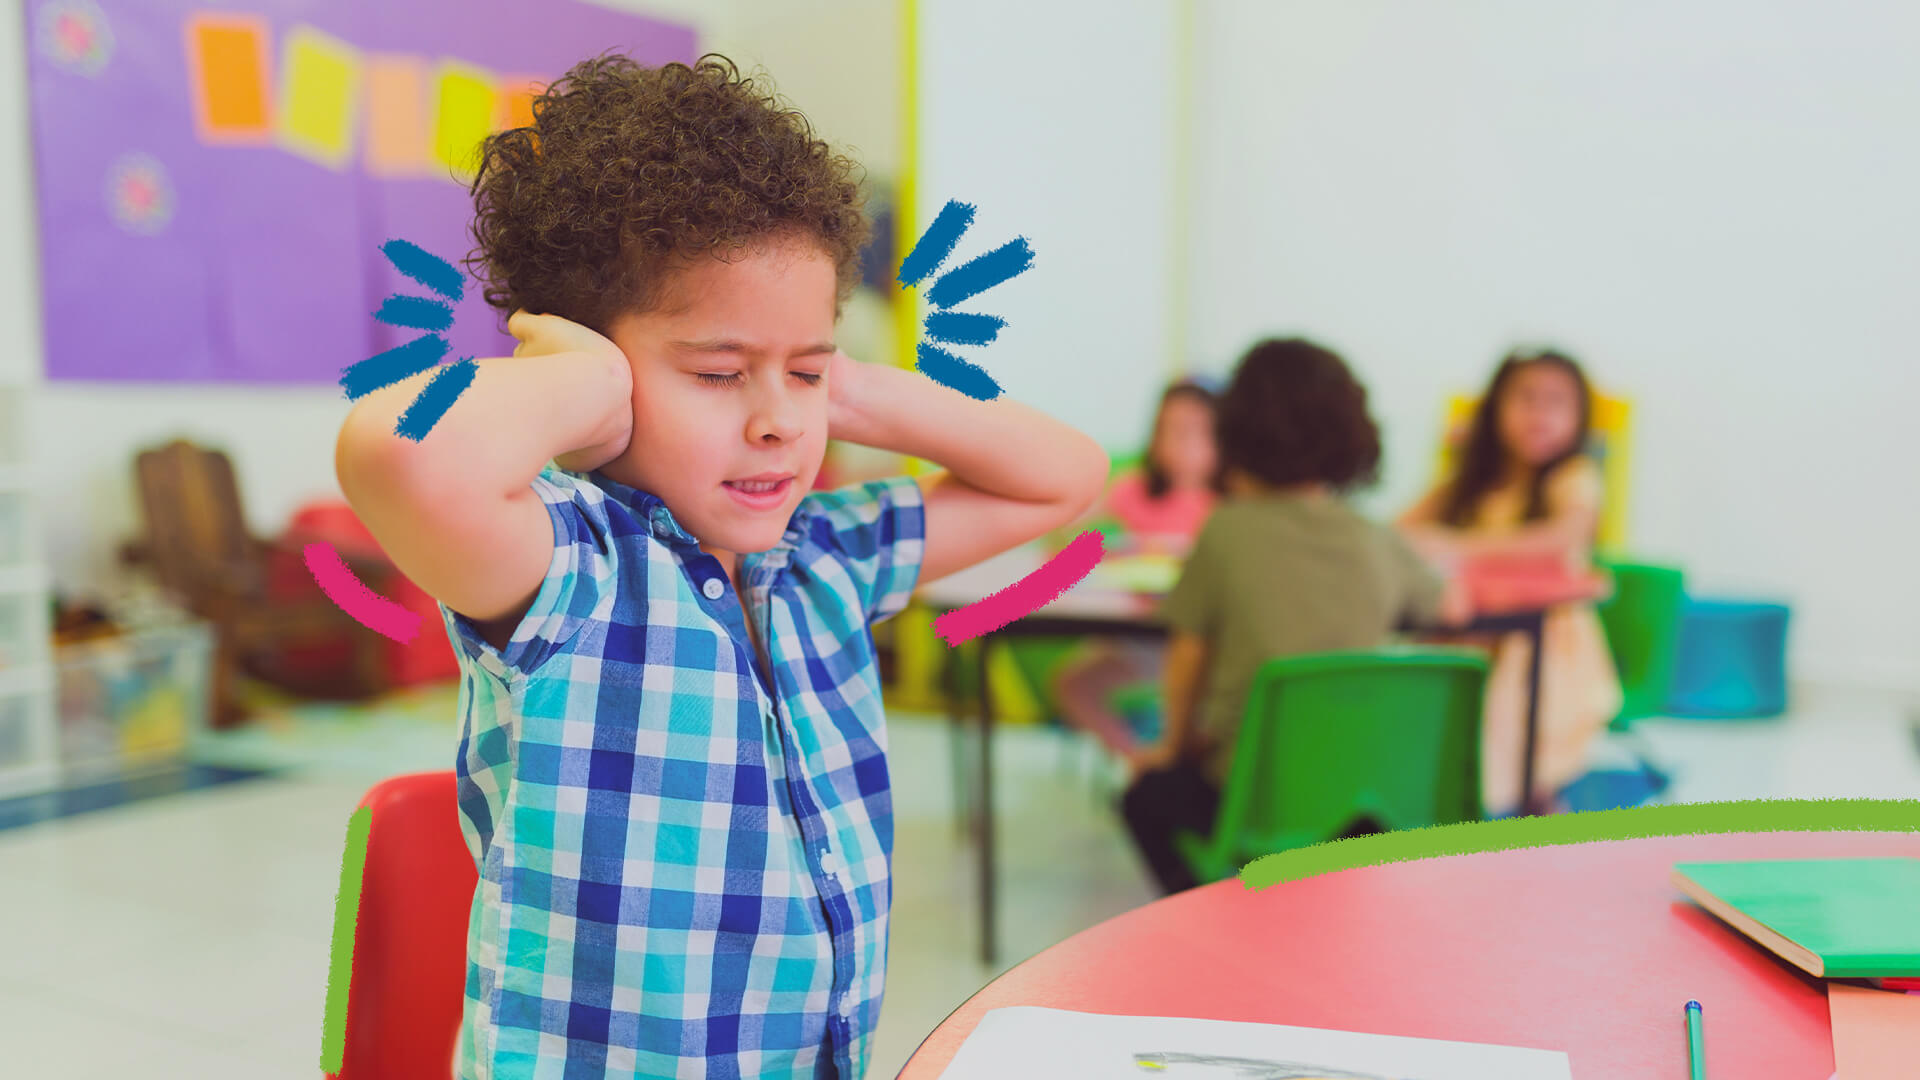 Um menino de pele clara, cabelos crespos castanhos e camisa xadrez azul está com semblante incômodo, com as mãos tapando os ouvidos.